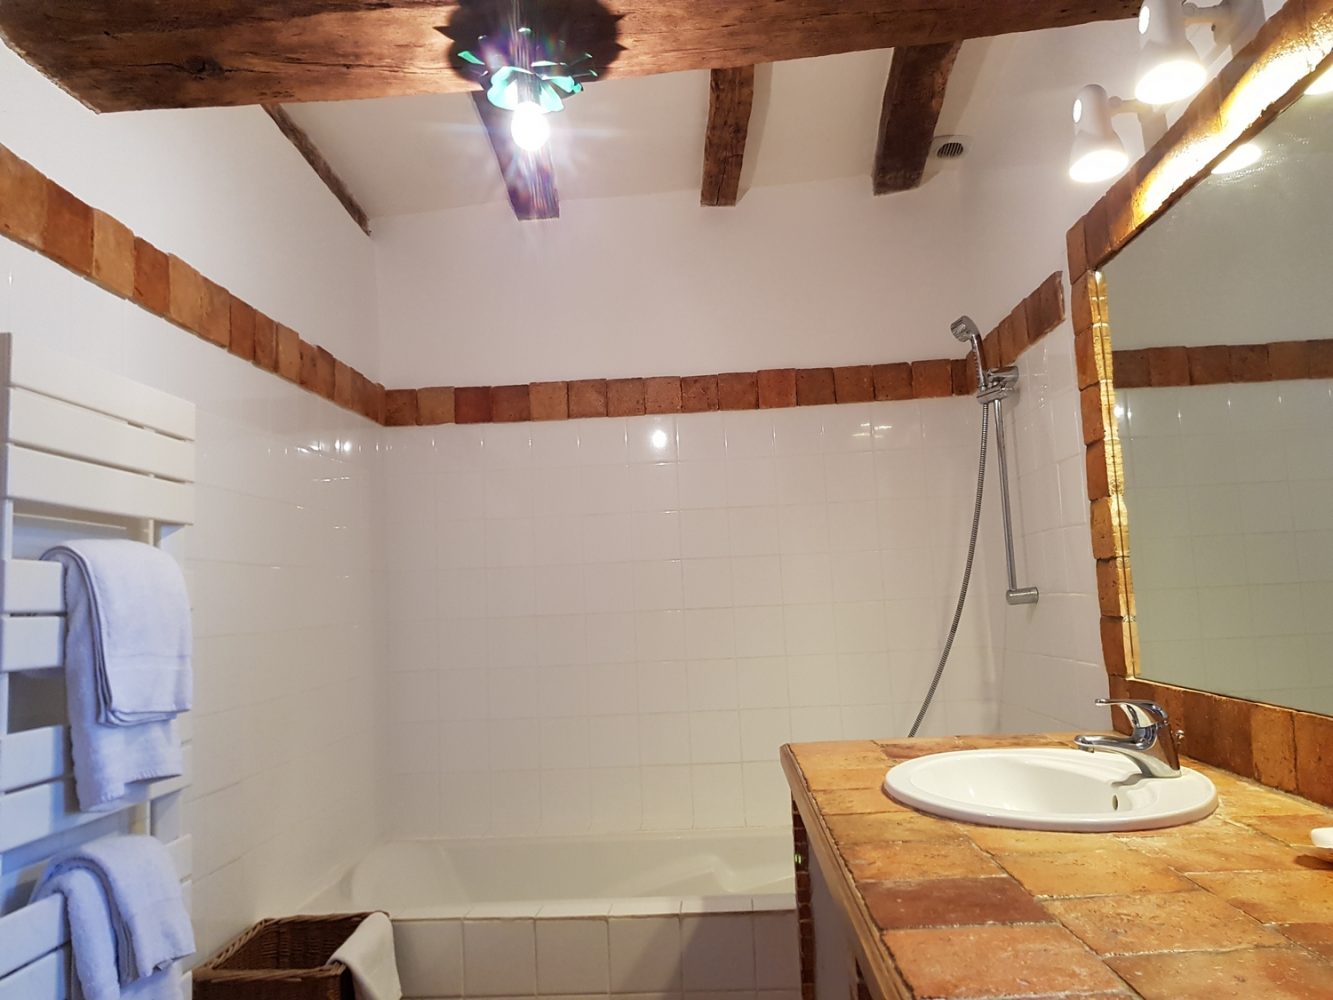 Salle de bain rez de chausée cottage gite la brosse val de loire